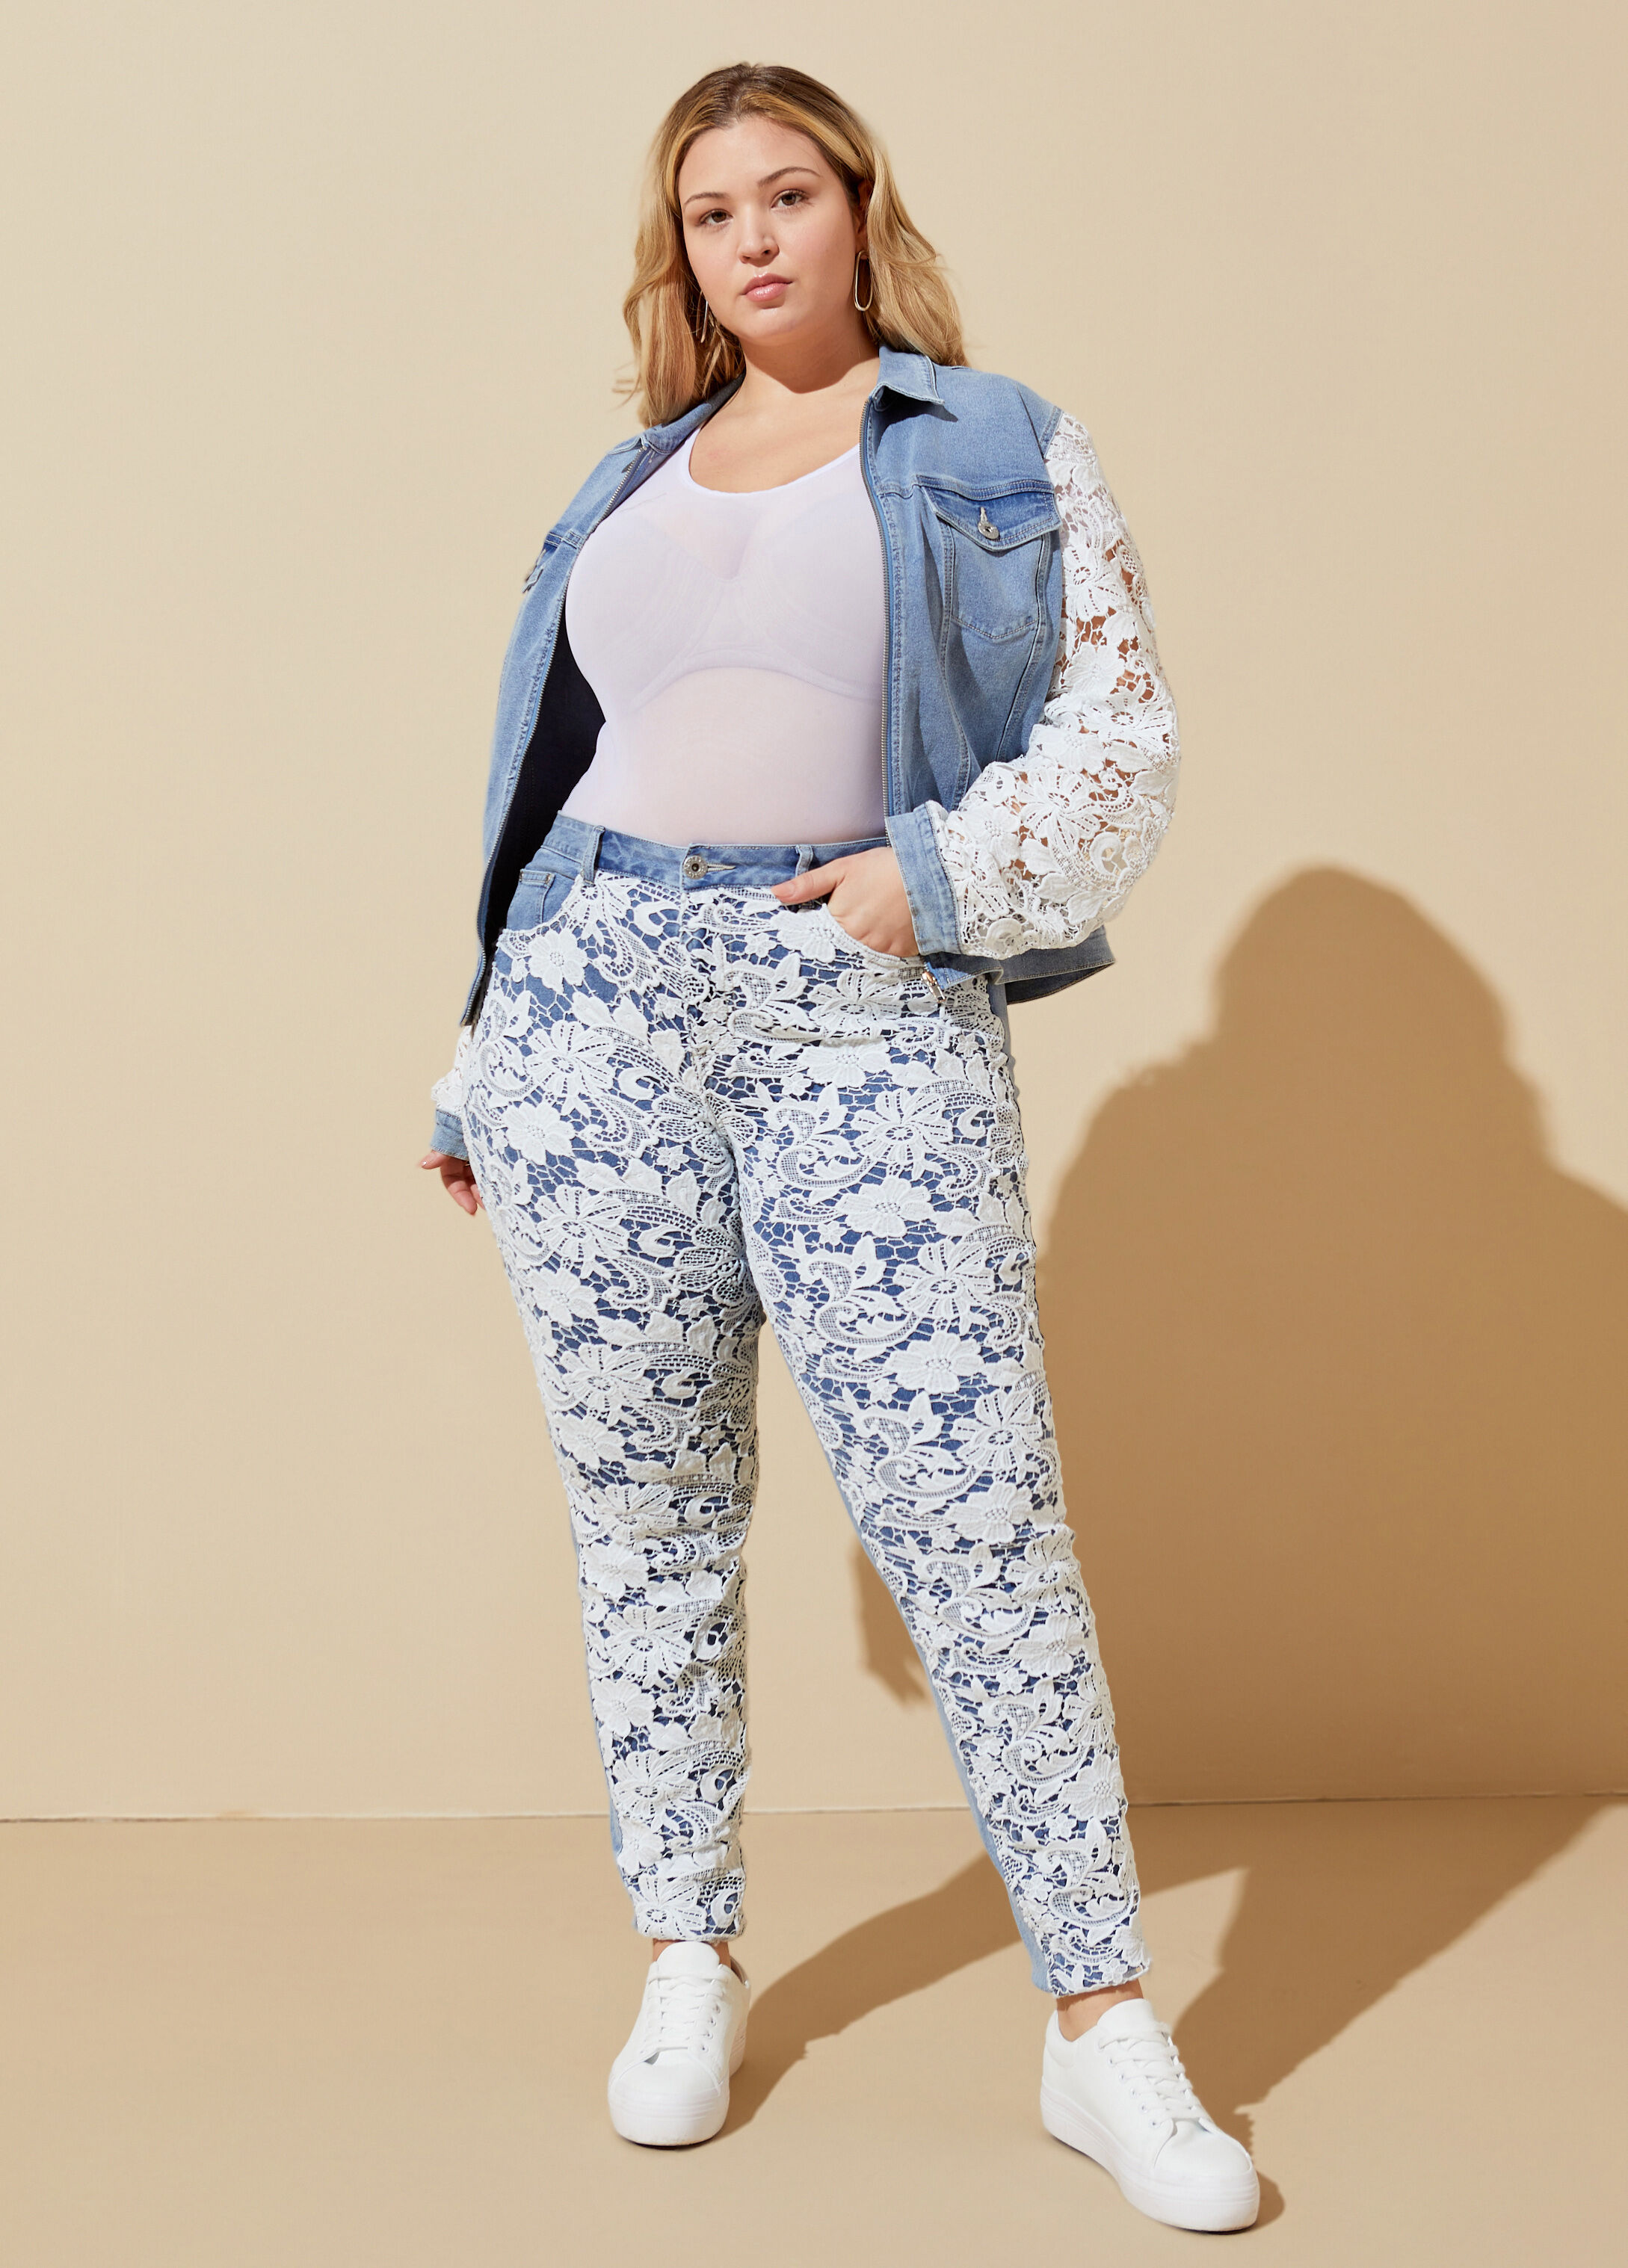 Plus Size Jeans, Sizes 10 - 36 | Ashley Stewart